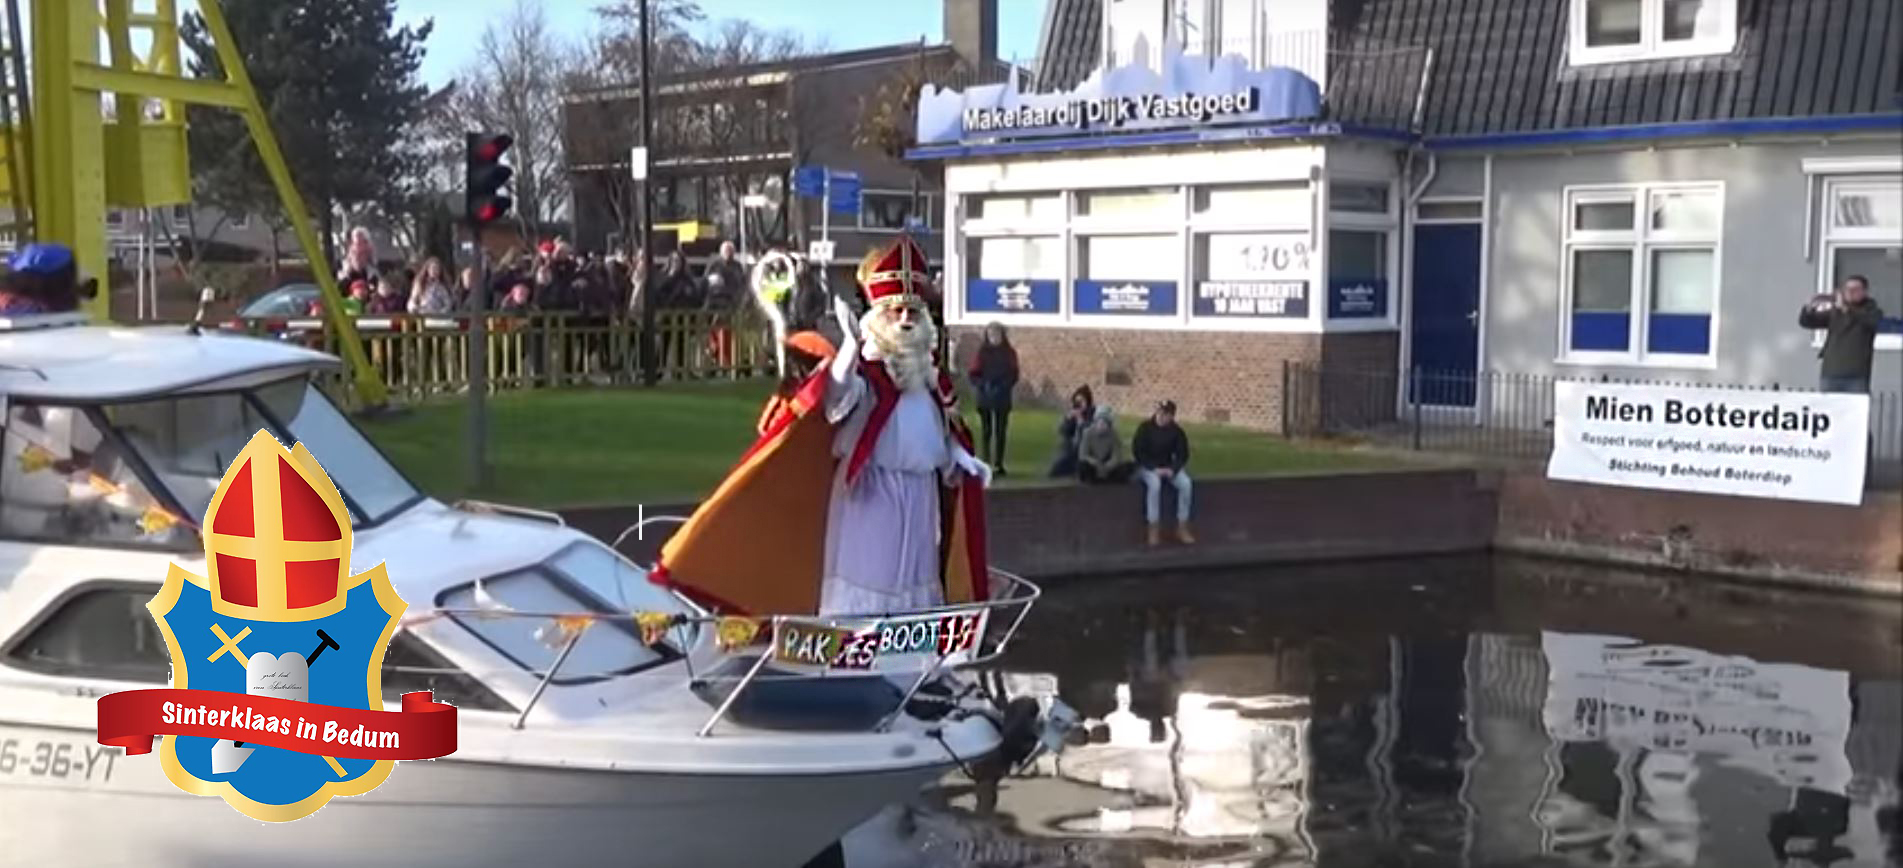 Sinterklaasintocht 24 november 2018 intoch Sinterklaas